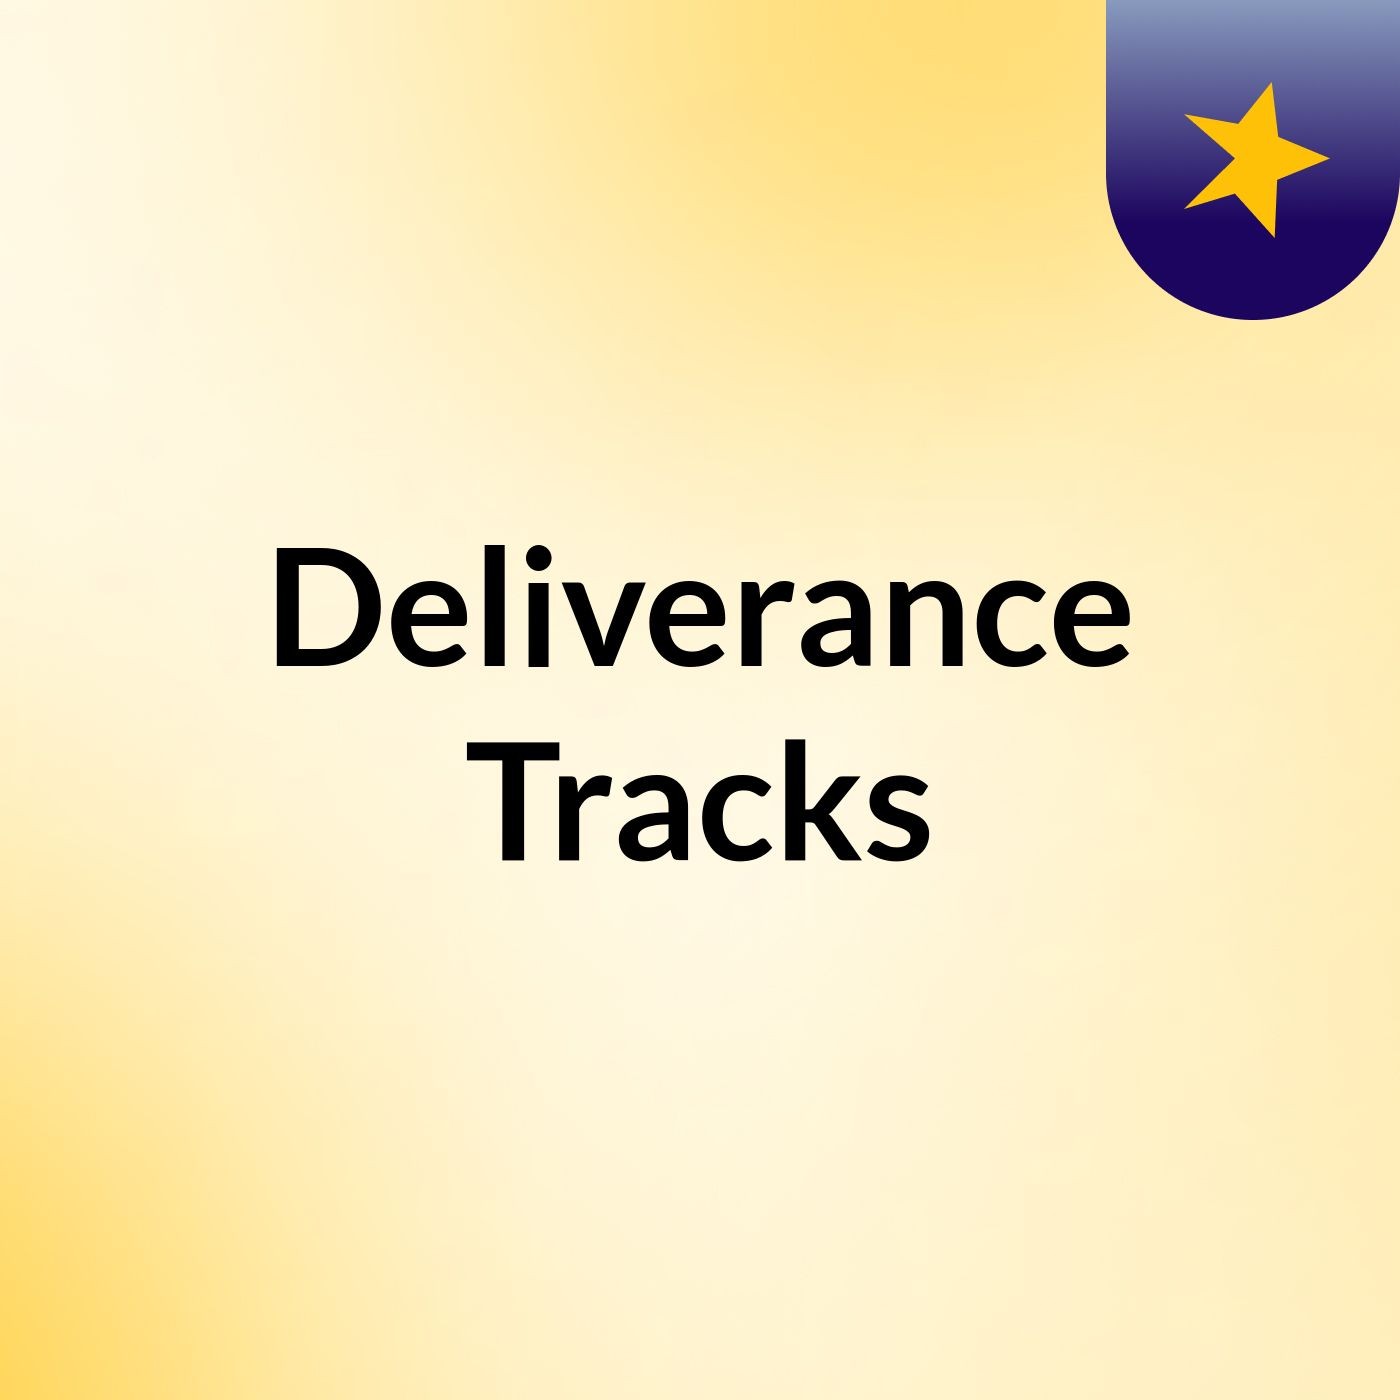 Deliverance Tracks